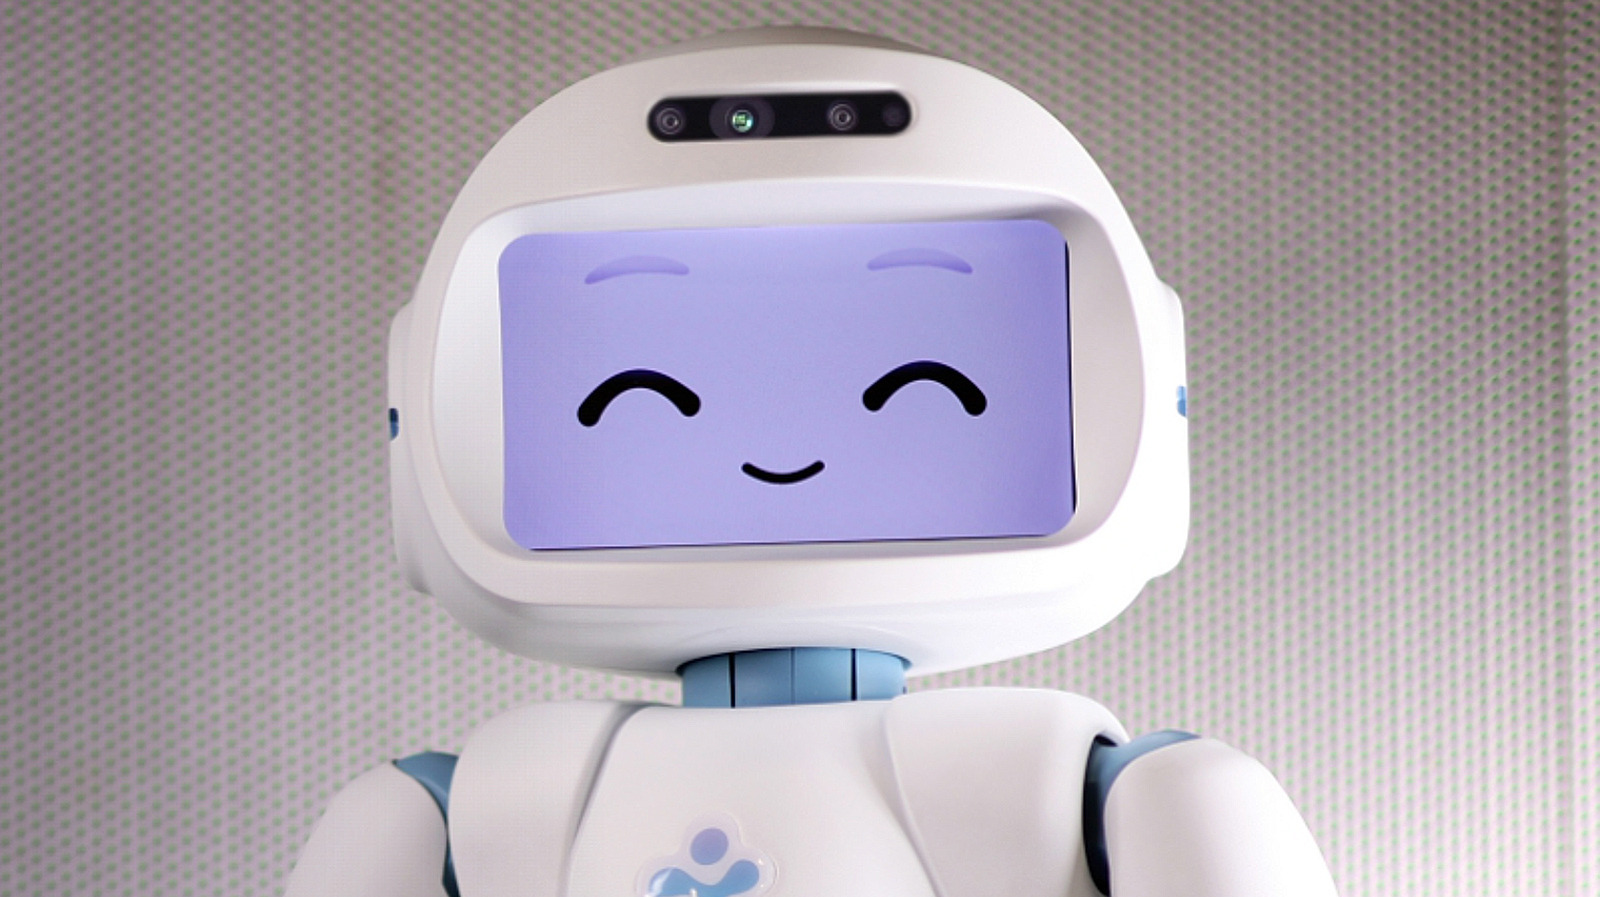 ربات ها برای راهنمایی سلامت روان خوب هستند، به خصوص اگر زیبا به نظر برسند